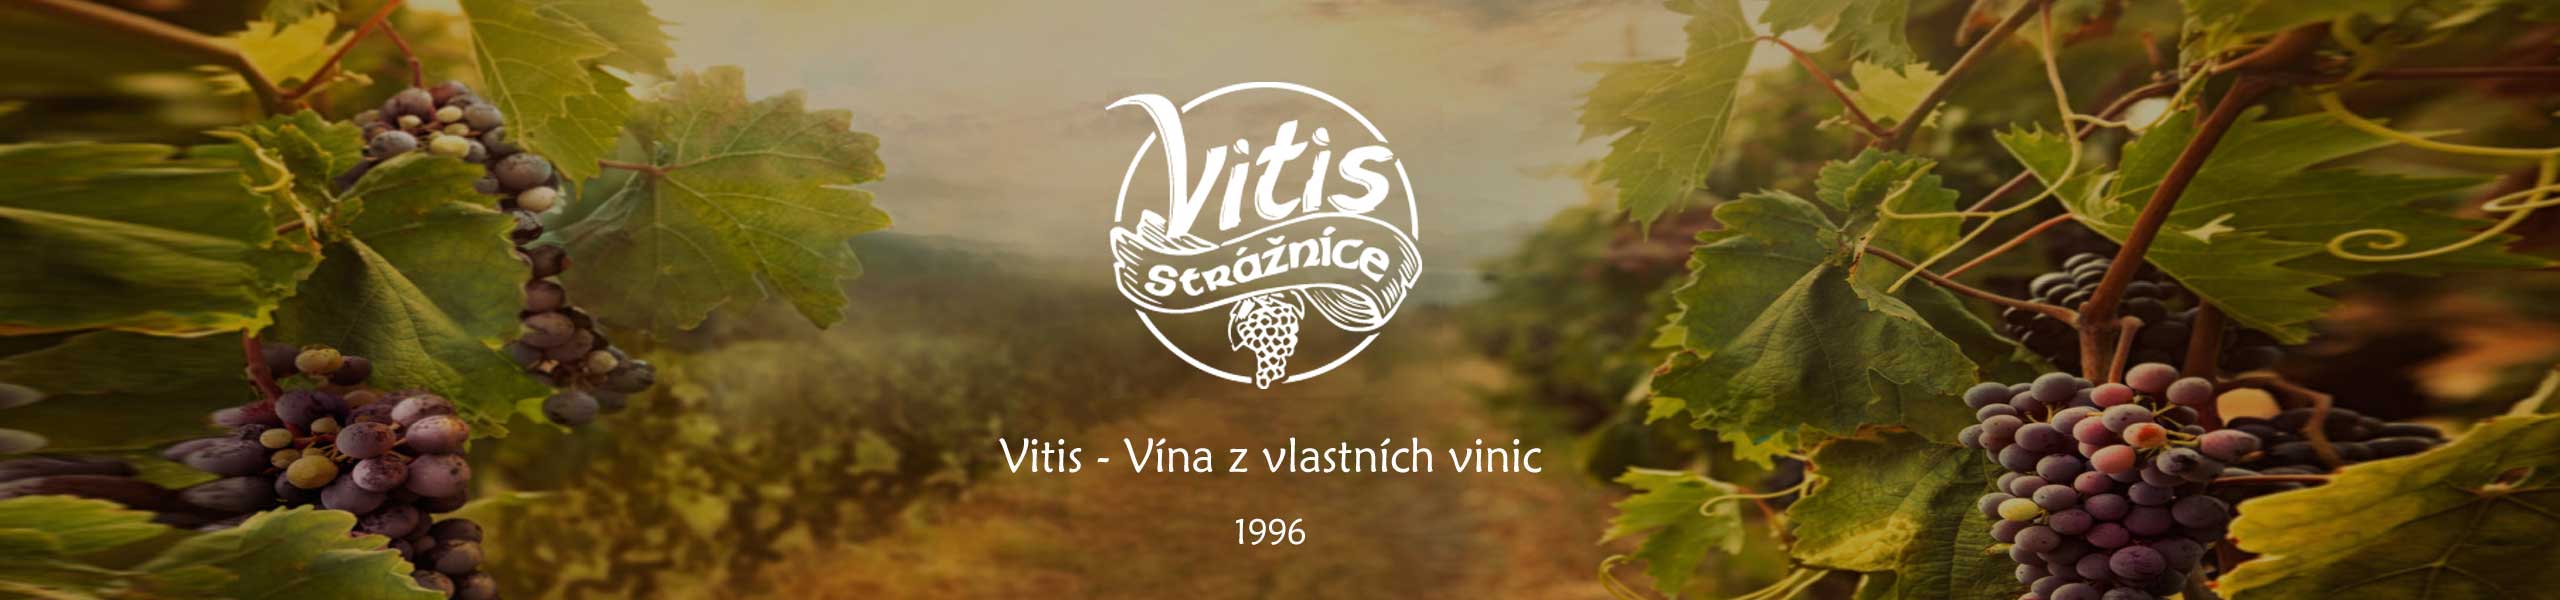 Vinařství Vitis